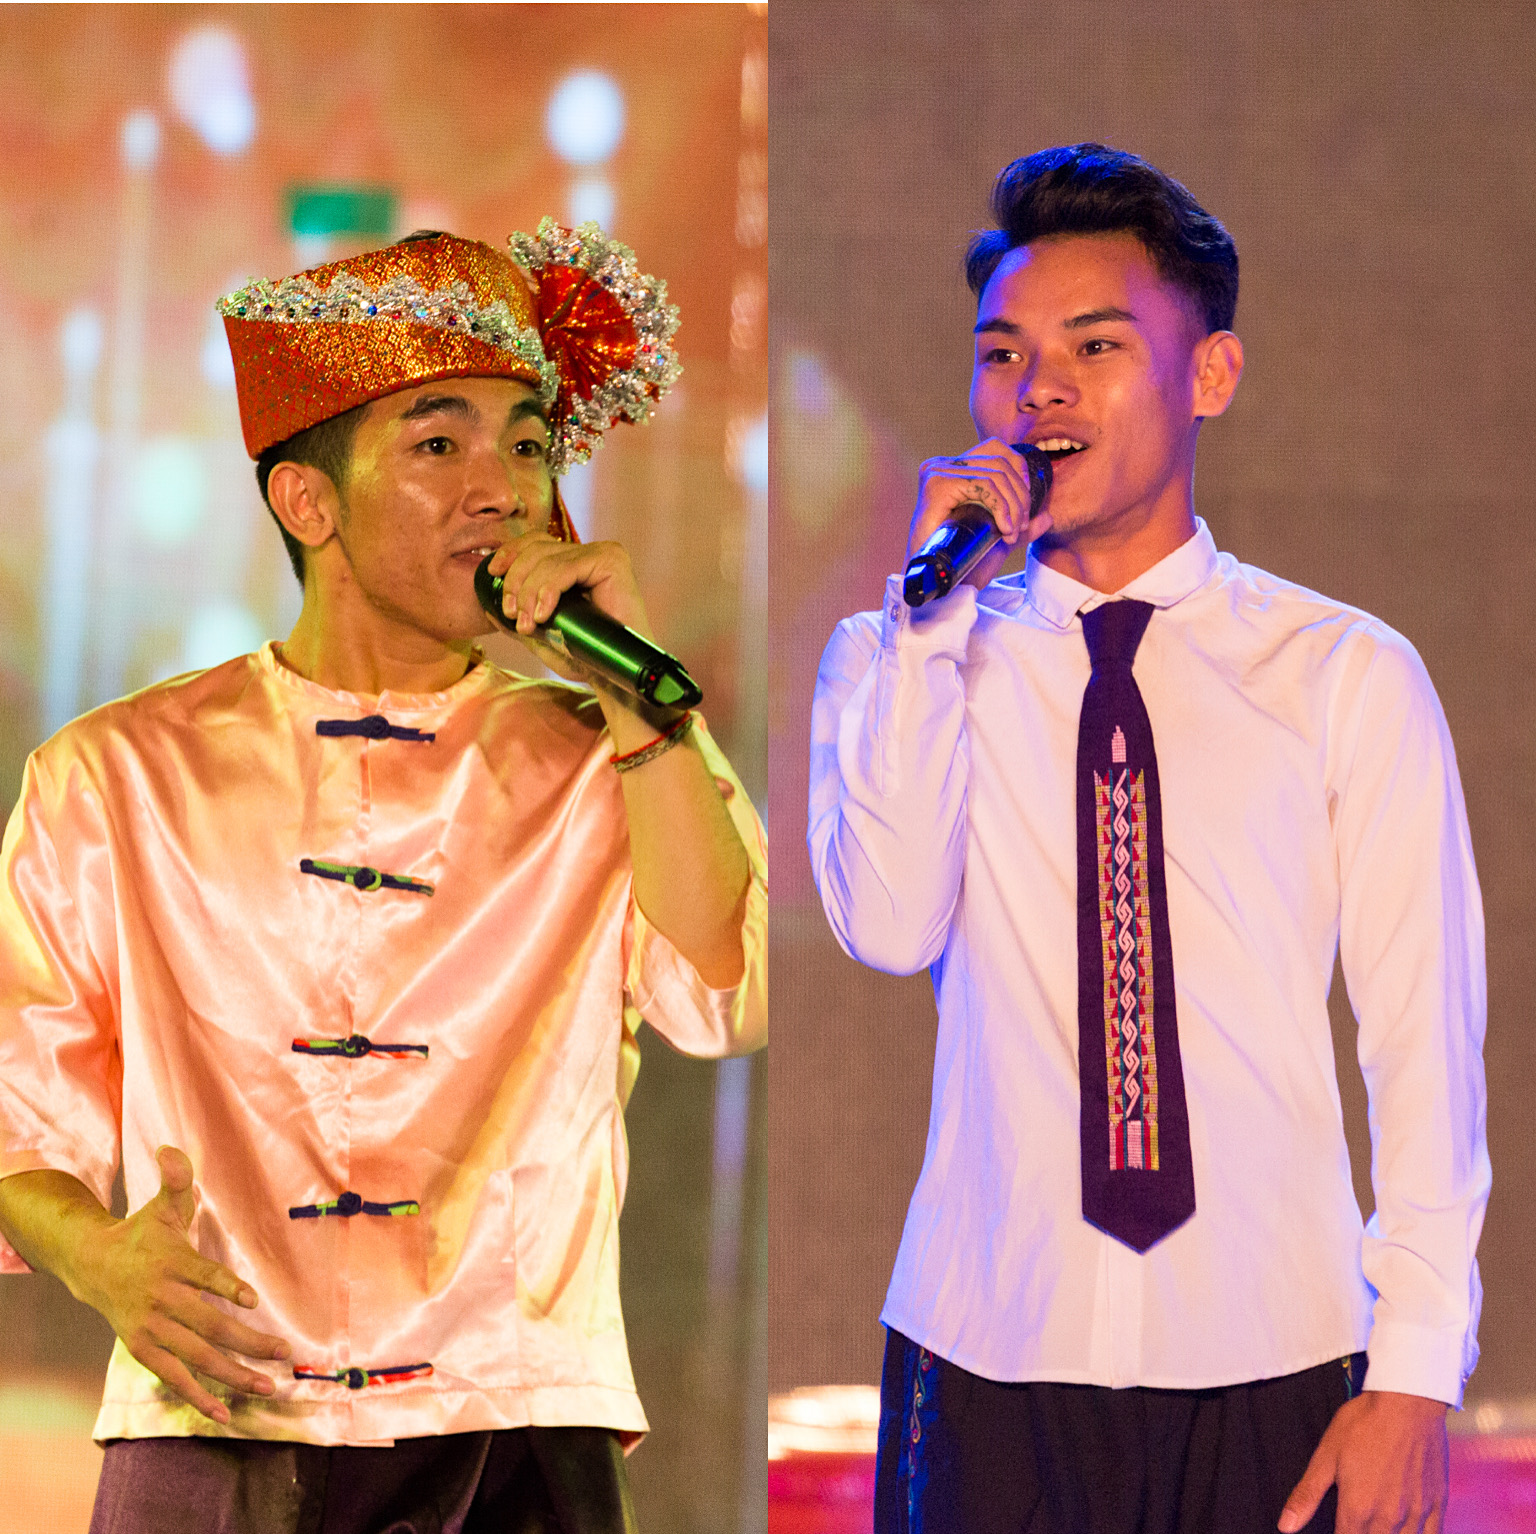 傣族民族服饰 | 德宏文化